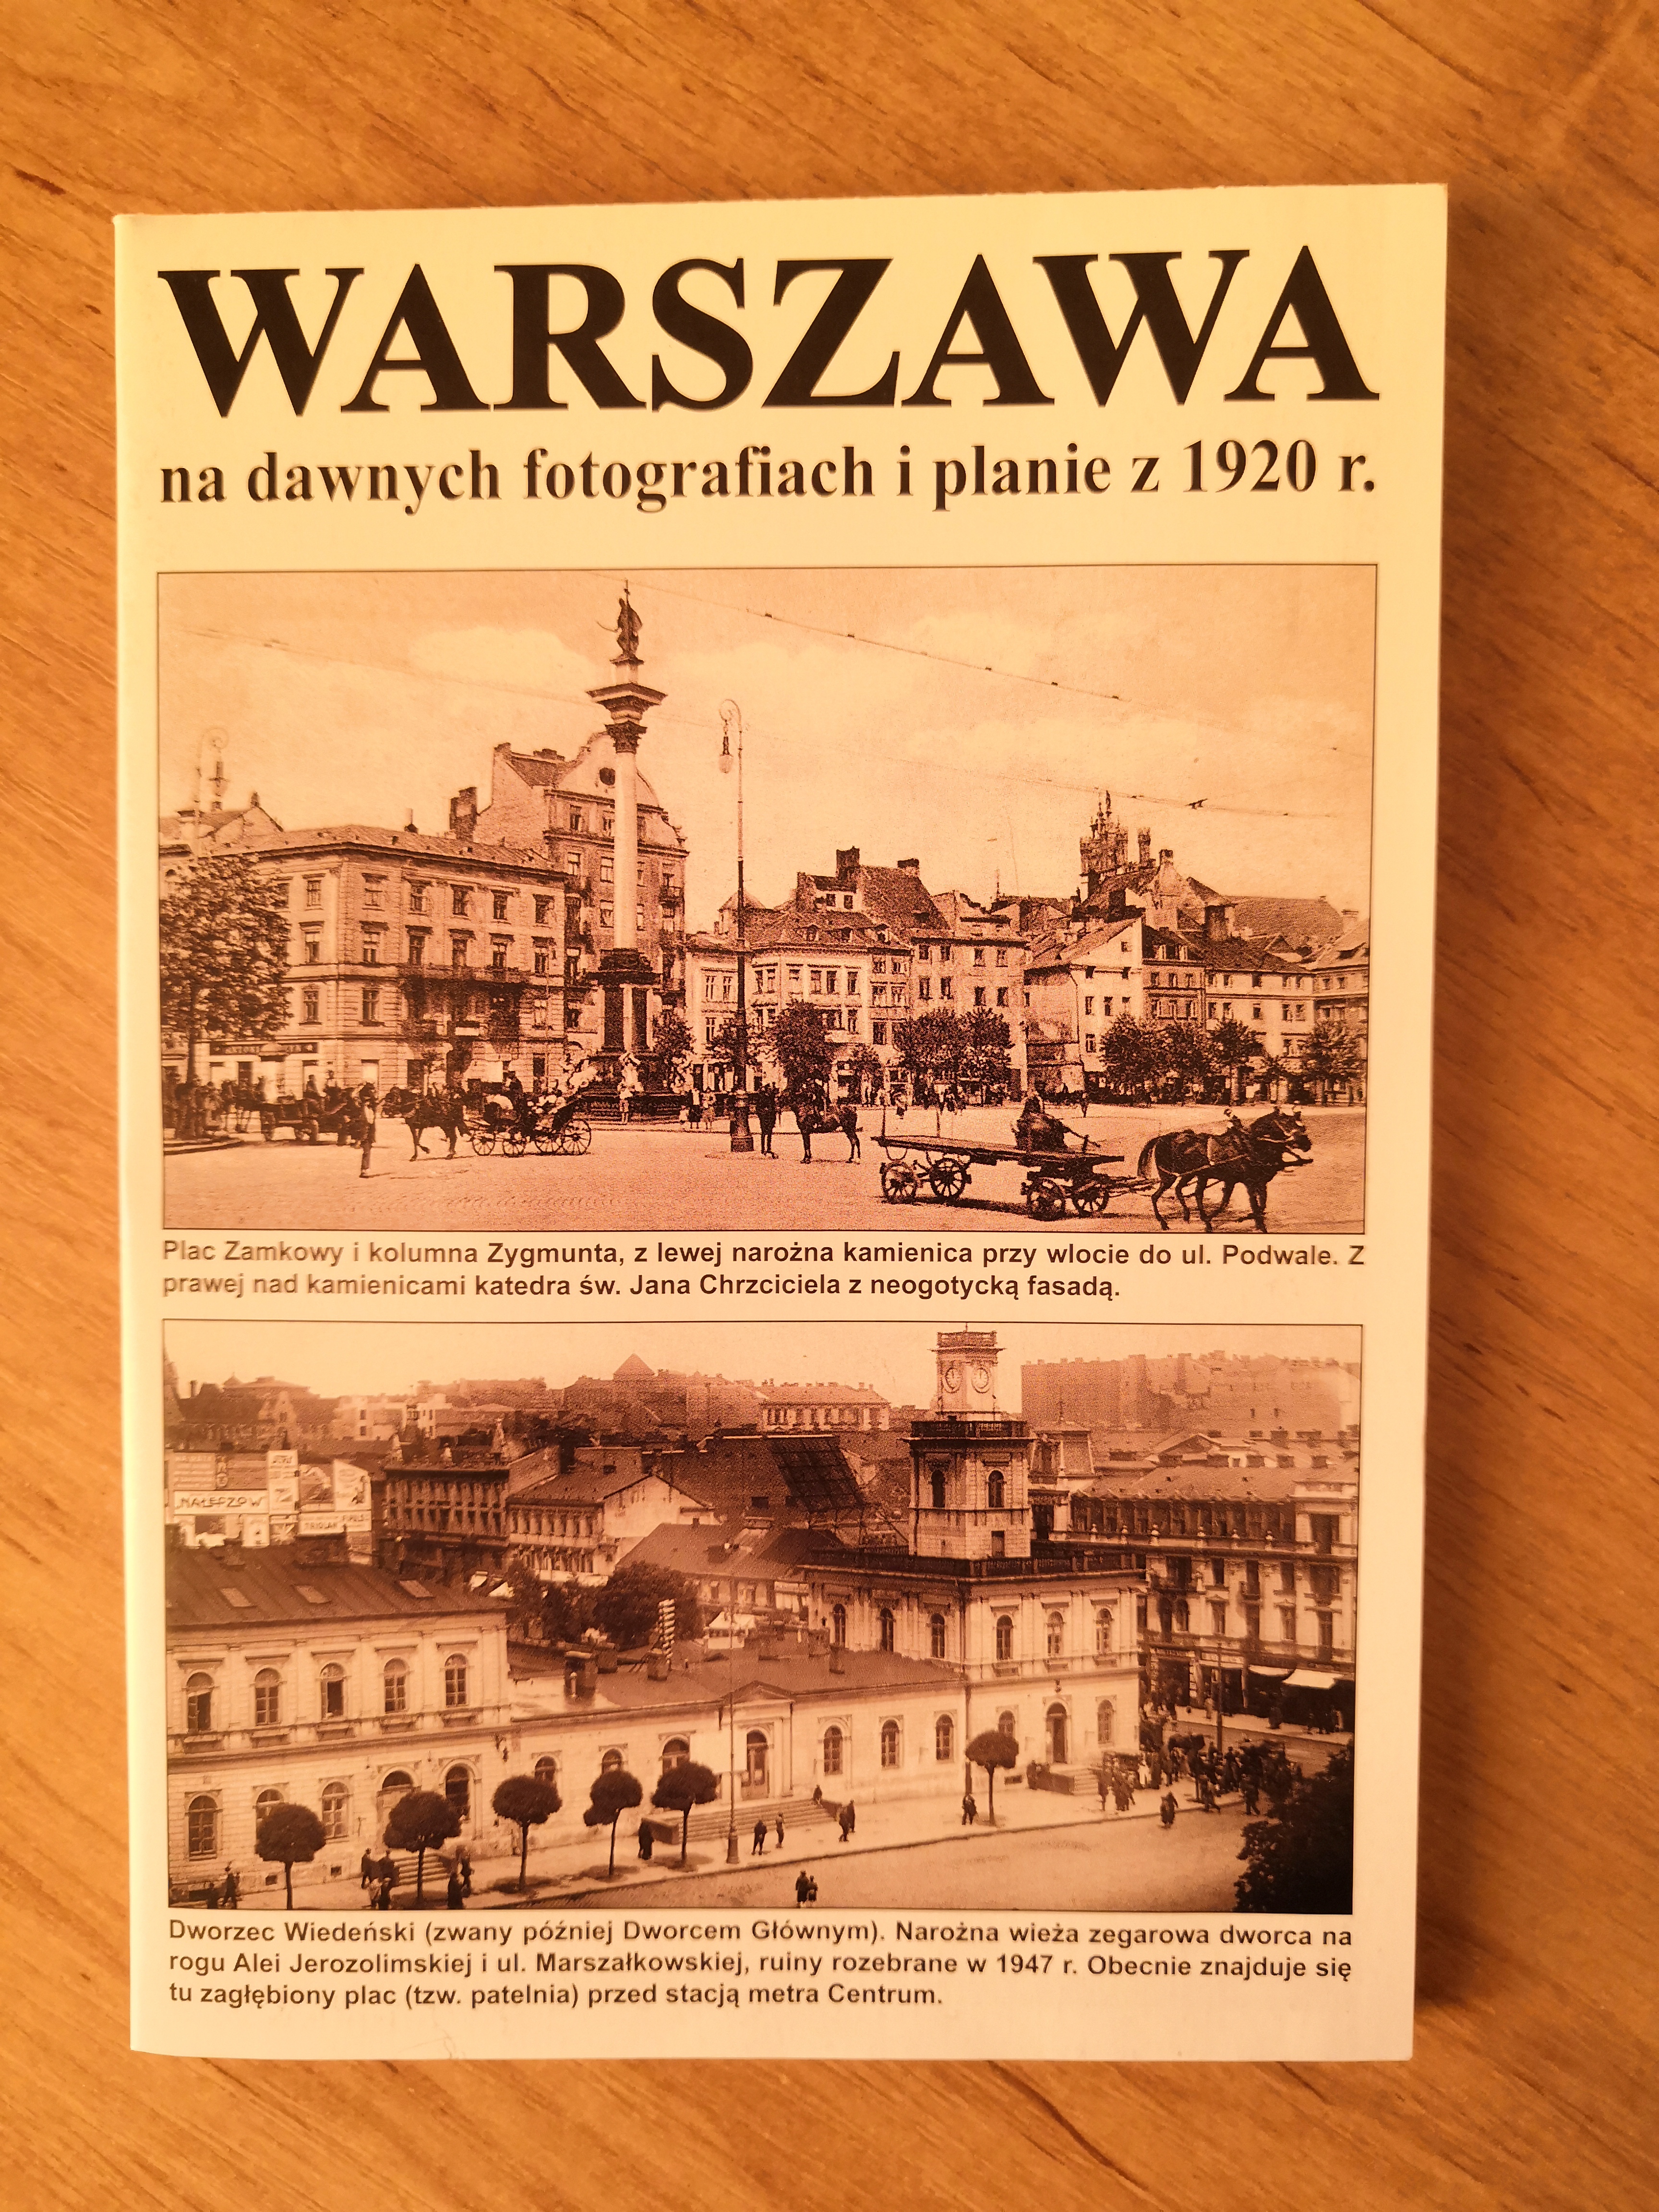 Warszawa na dawnych fotografiach i planie z 1920 r. (J.A.Krawczyk)